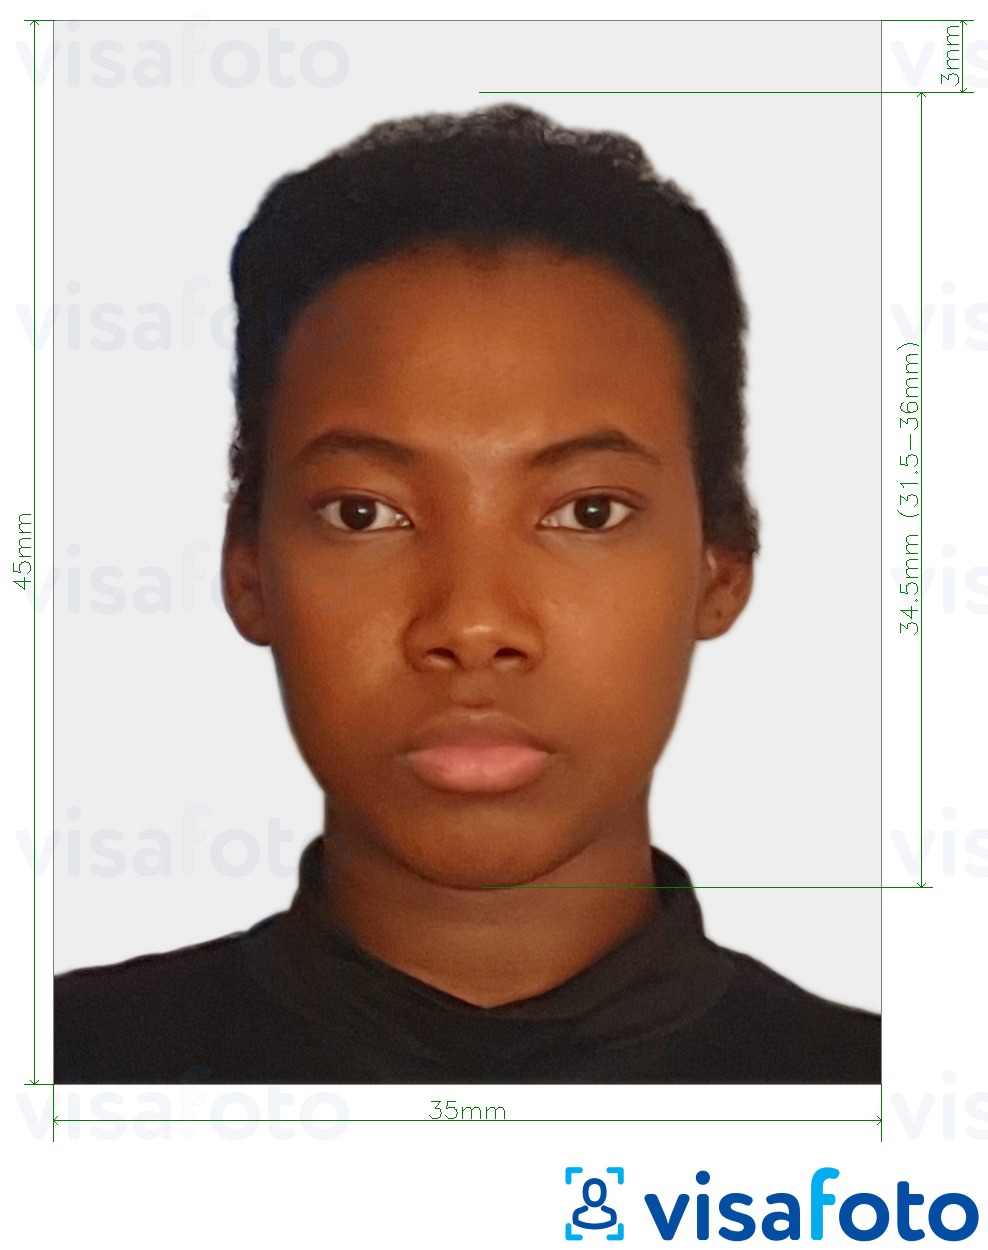 Образец фотографии для Суринамская виза 45x35 мм (1,77x1,37 дюйма) с точными размерами